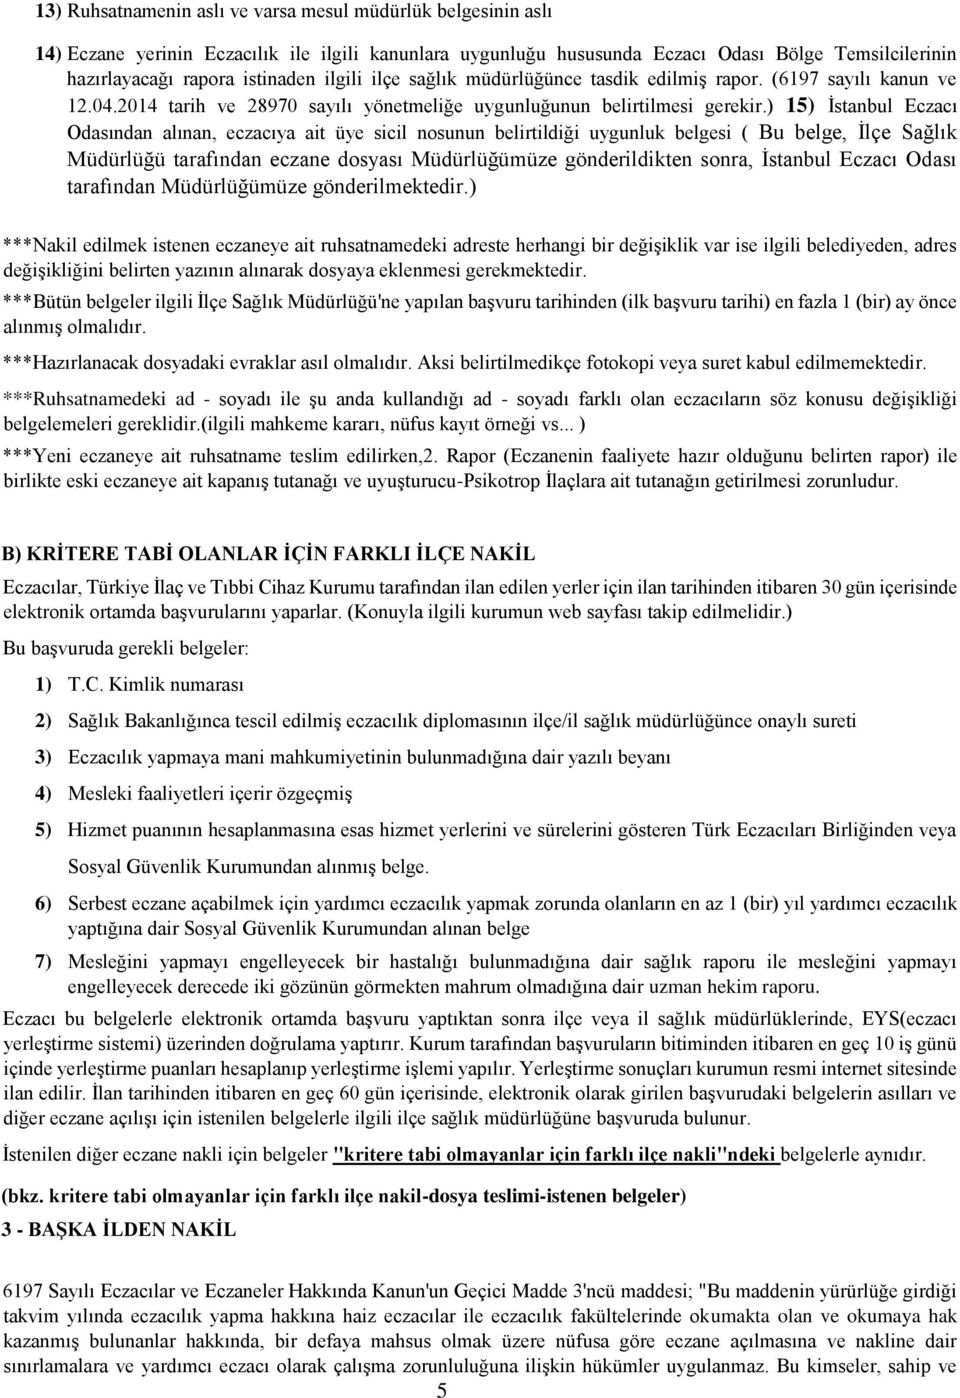 ) 15) İstanbul Eczacı Odasından alınan, eczacıya ait üye sicil nosunun belirtildiği uygunluk belgesi ( Bu belge, İlçe Sağlık Müdürlüğü tarafından eczane dosyası Müdürlüğümüze gönderildikten sonra,